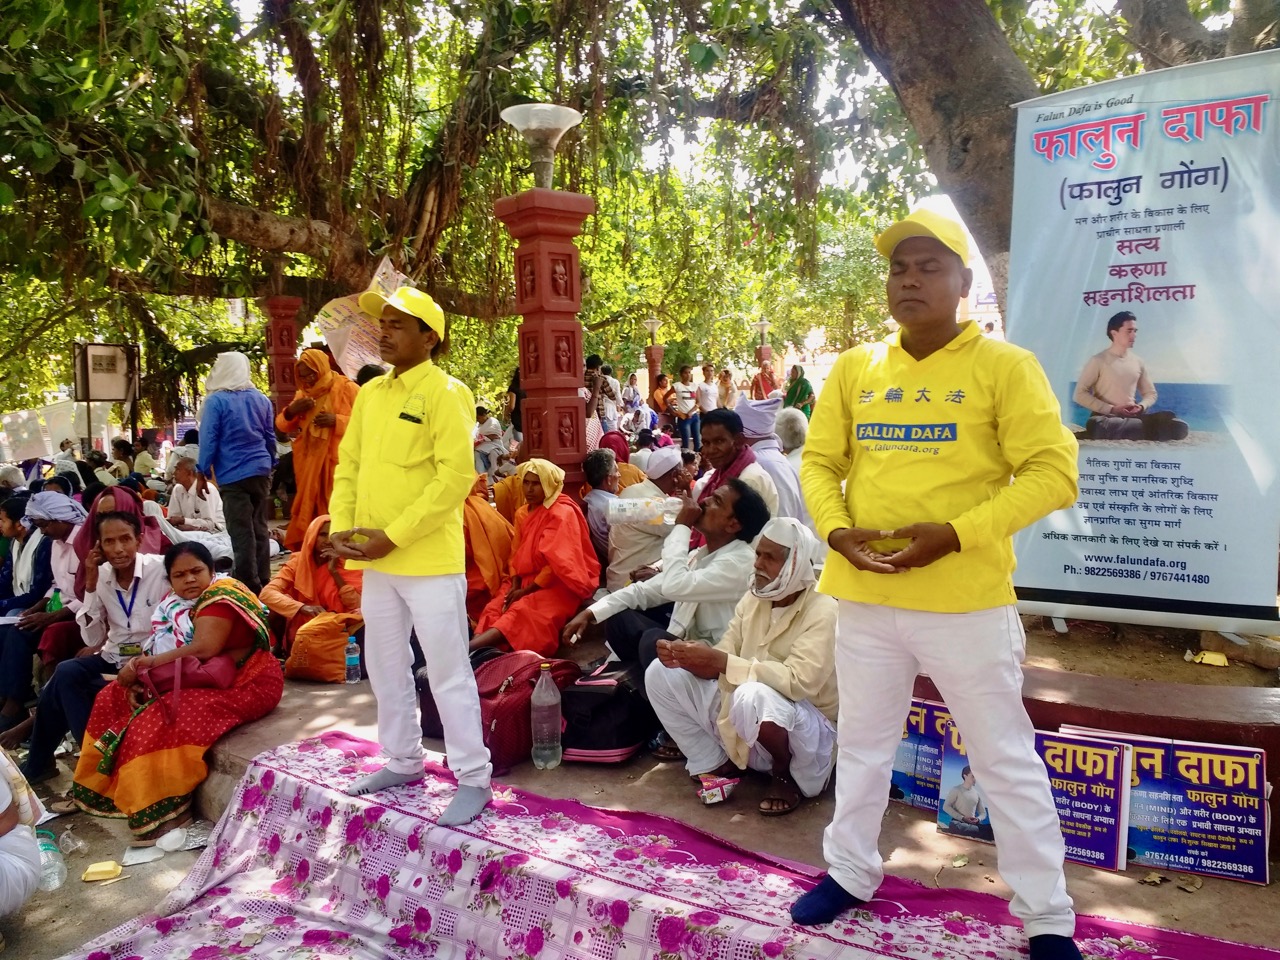 Image for article Índia: Apresentando o Falun Dafa aos peregrinos na árvore sagrada